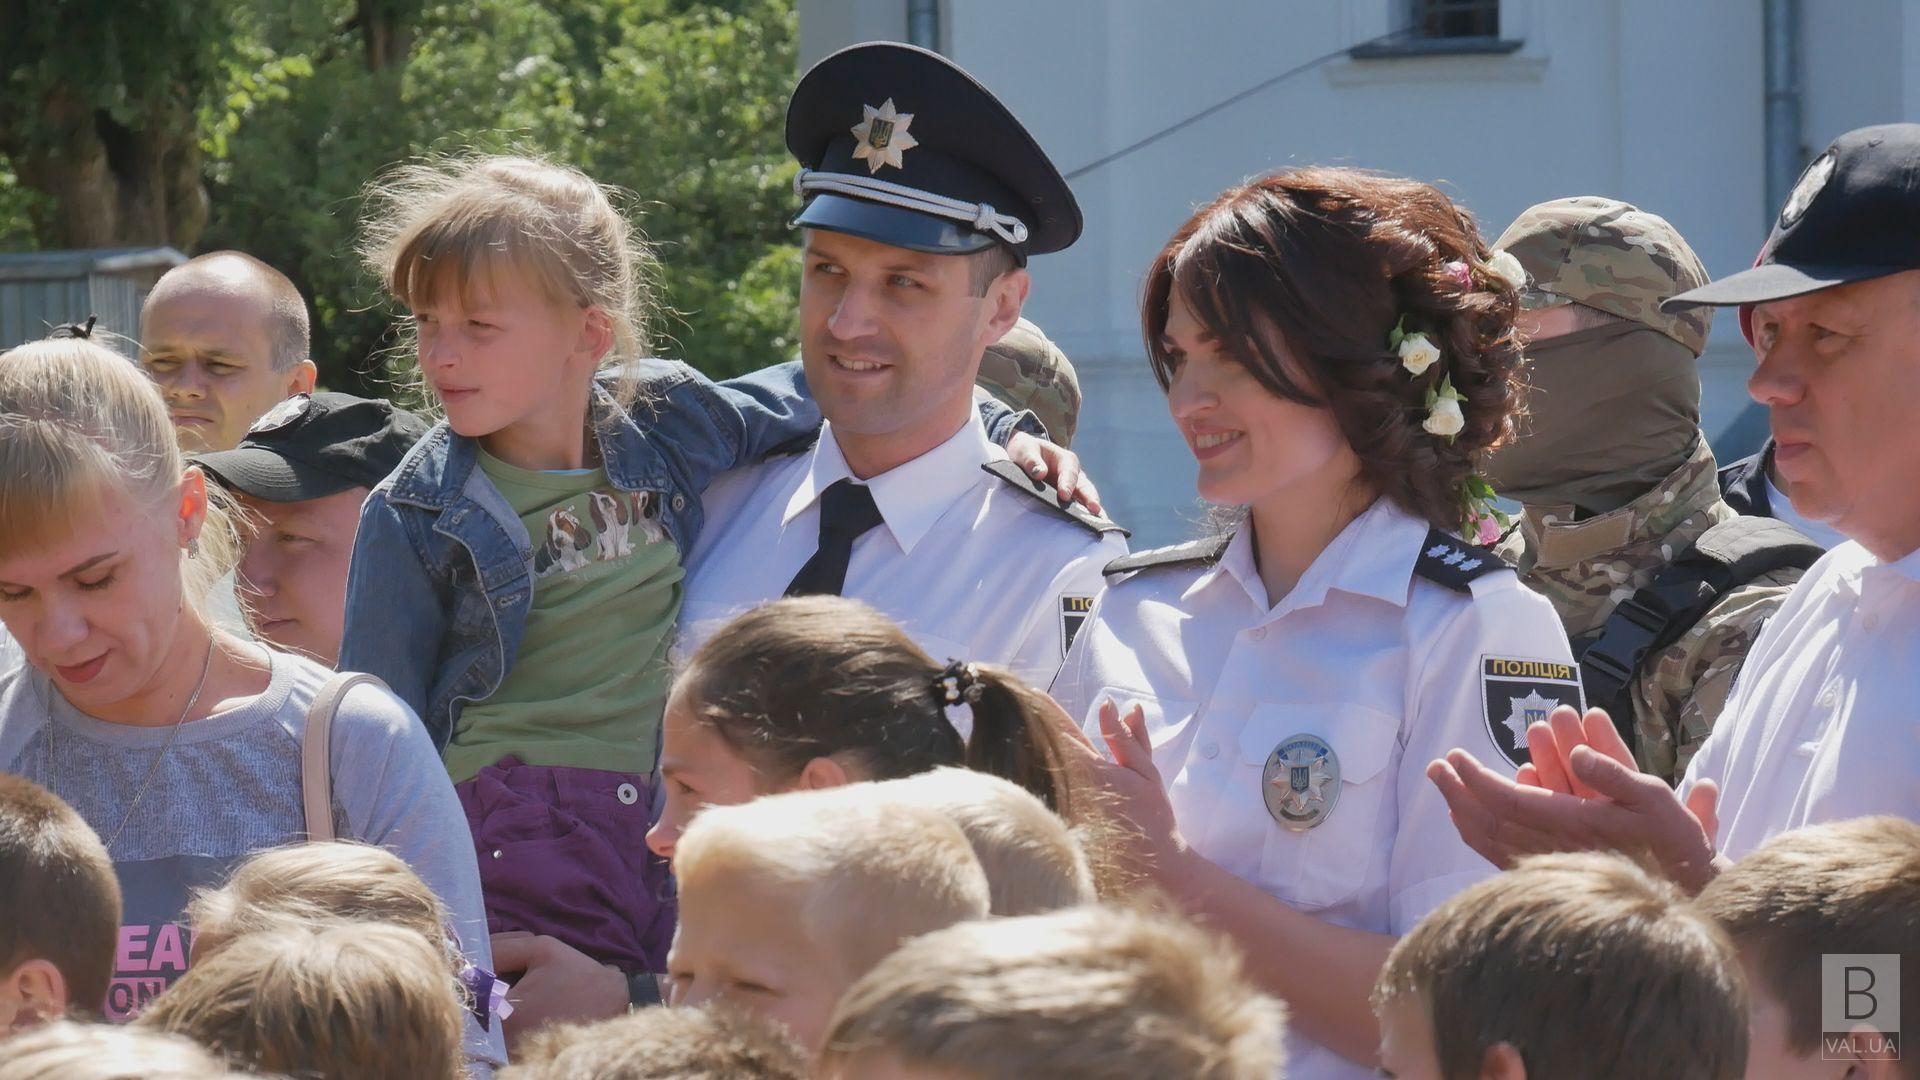 Правоохранители Чернигова в этом году скромнее празднуют День Национальной полиции ВИДЕО